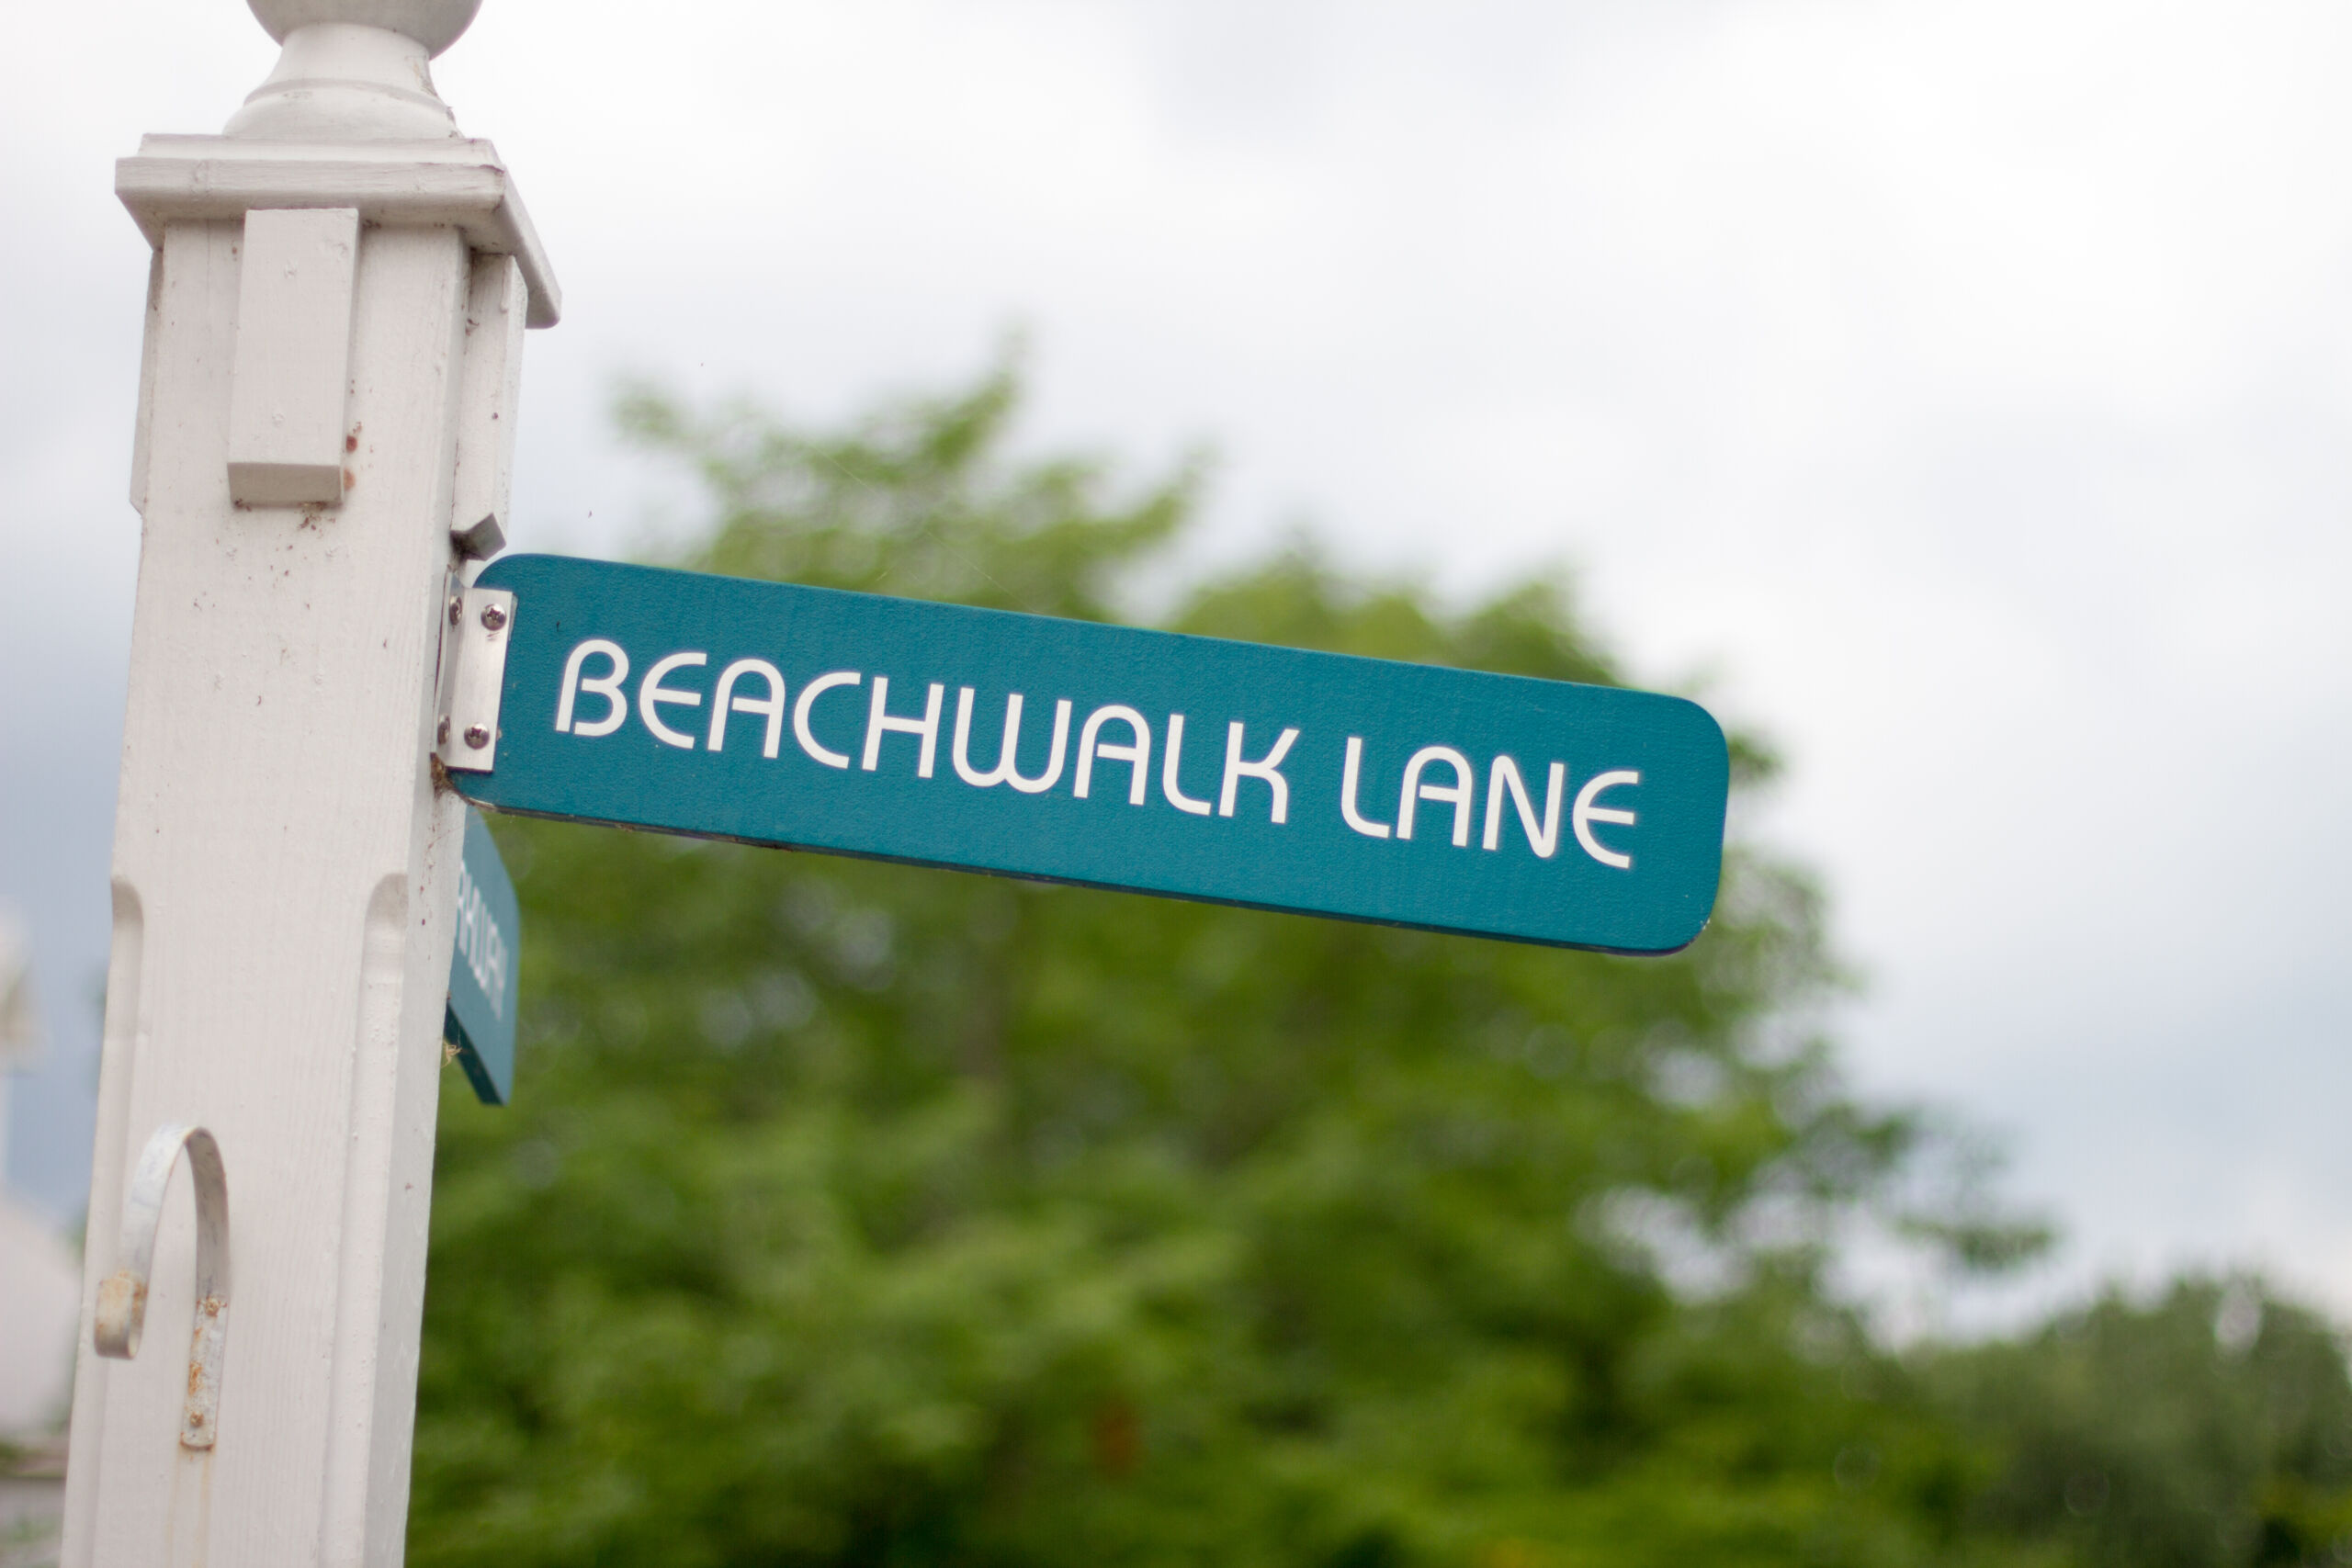 Beachwalk Lane street sign